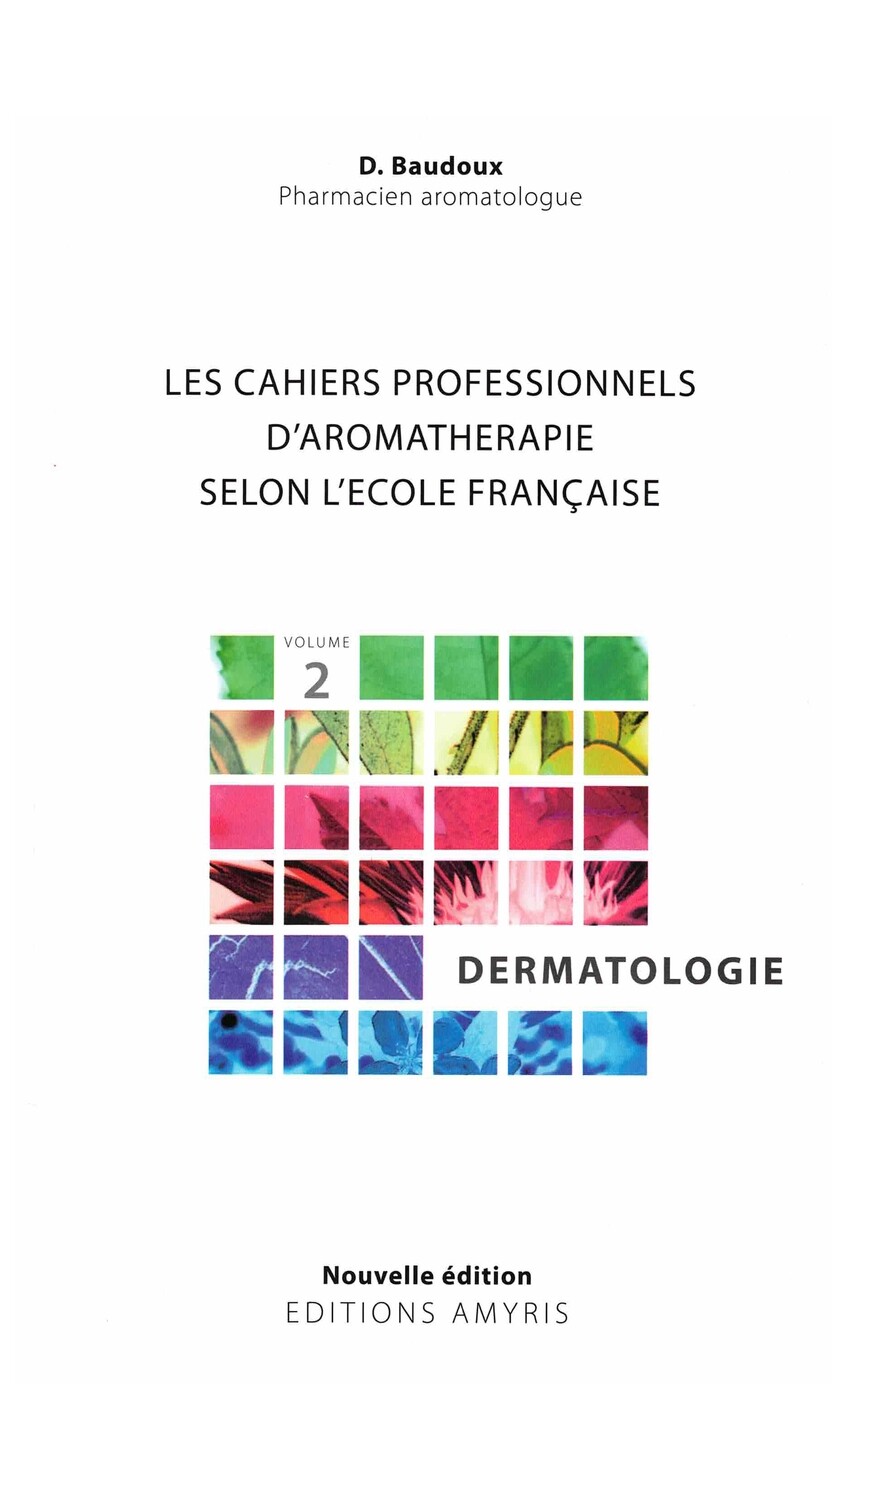 Les cahiers professionnels d'aromathérapie selon l'école Française - Dermatologie